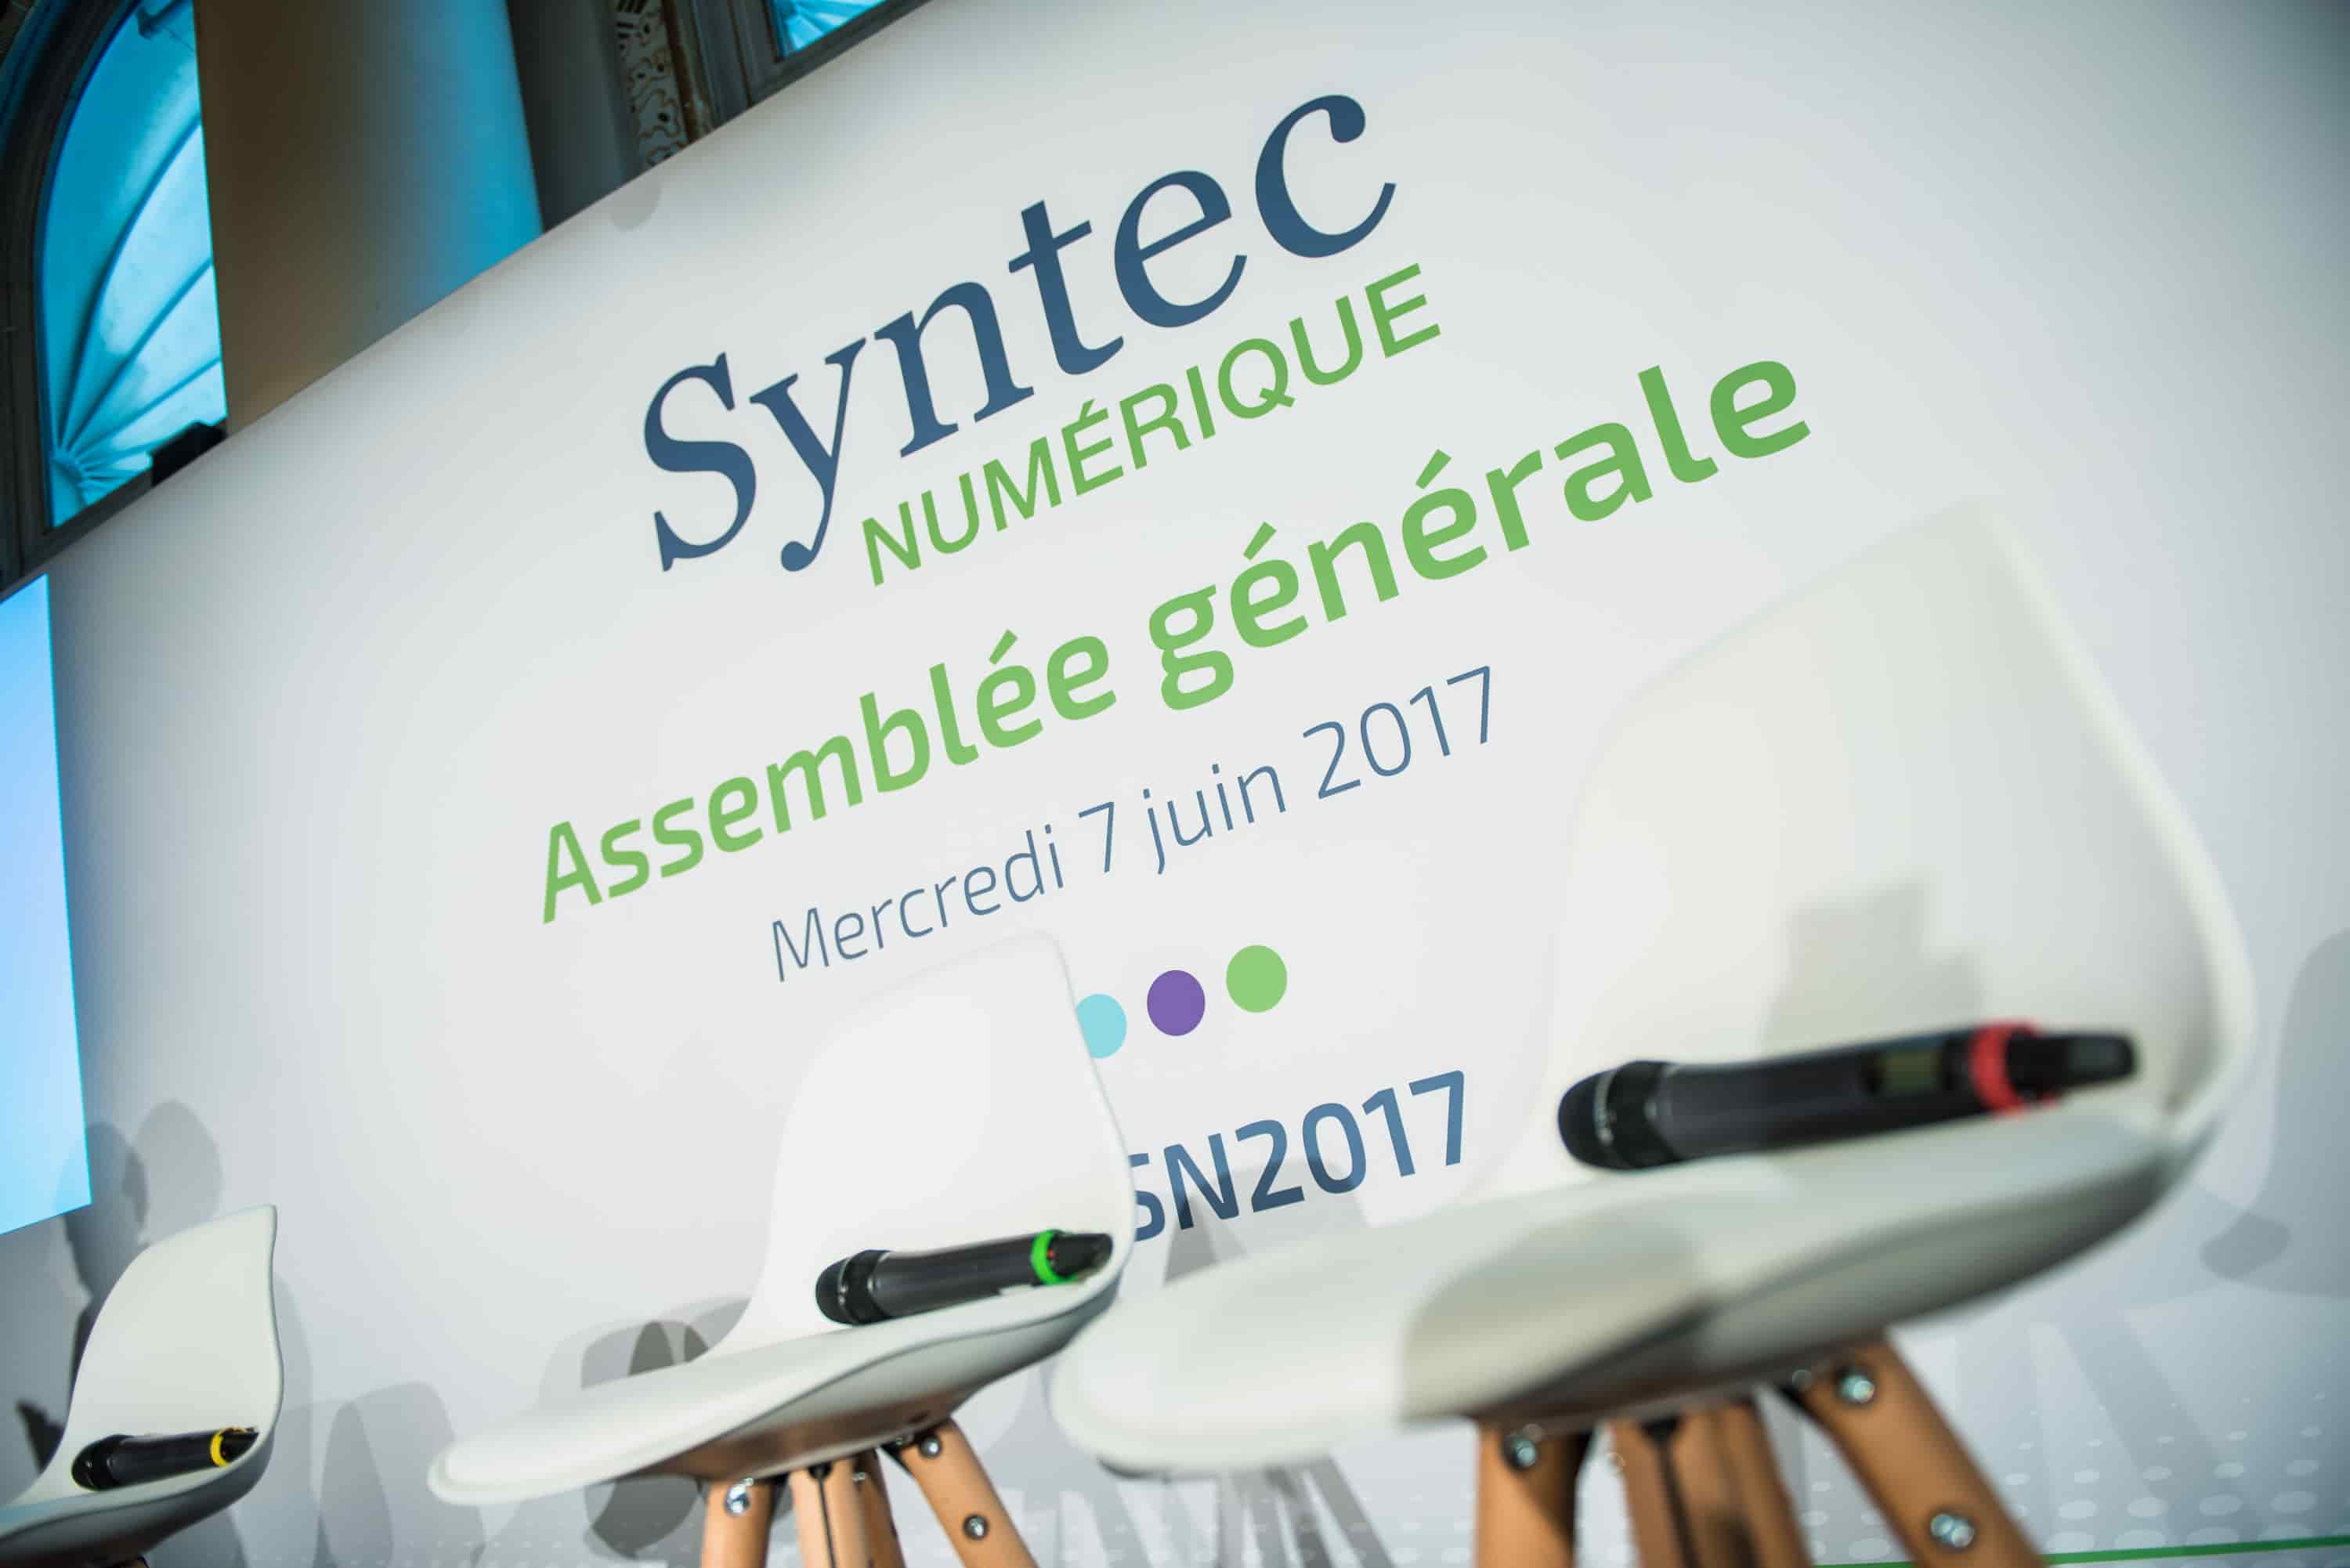 Assemblee Generale Syntec Numerique 2017